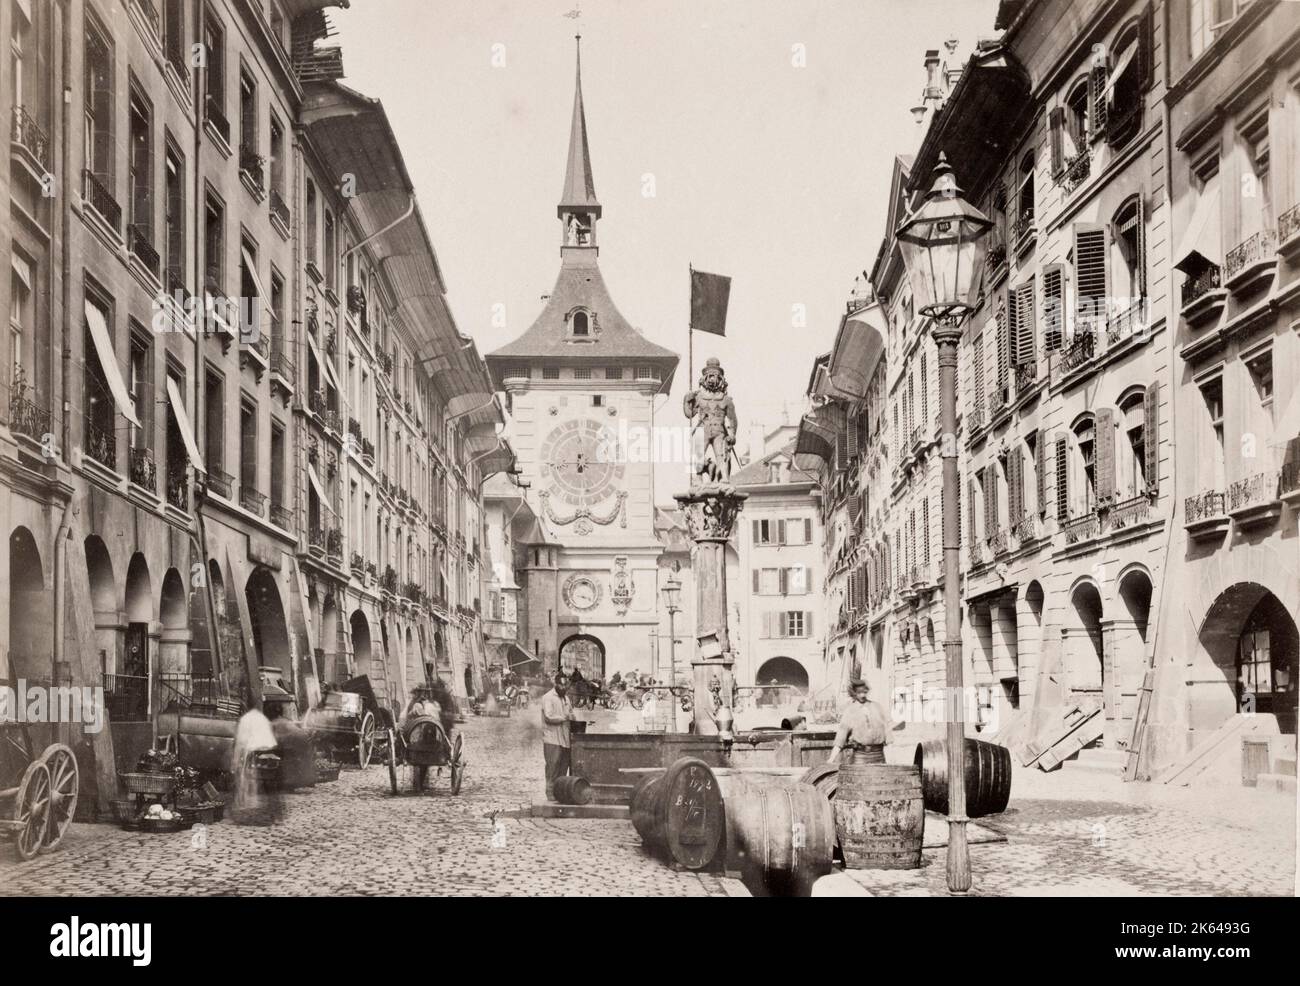 Fotografia d'epoca del XIX secolo: La Zytglogge è una torre medievale di riferimento a Berna, Svizzera. Costruito agli inizi del XIII secolo, ha servito la città come torre di guardia, prigione, torre dell'orologio, centro di vita urbana e monumento civico. Foto Stock